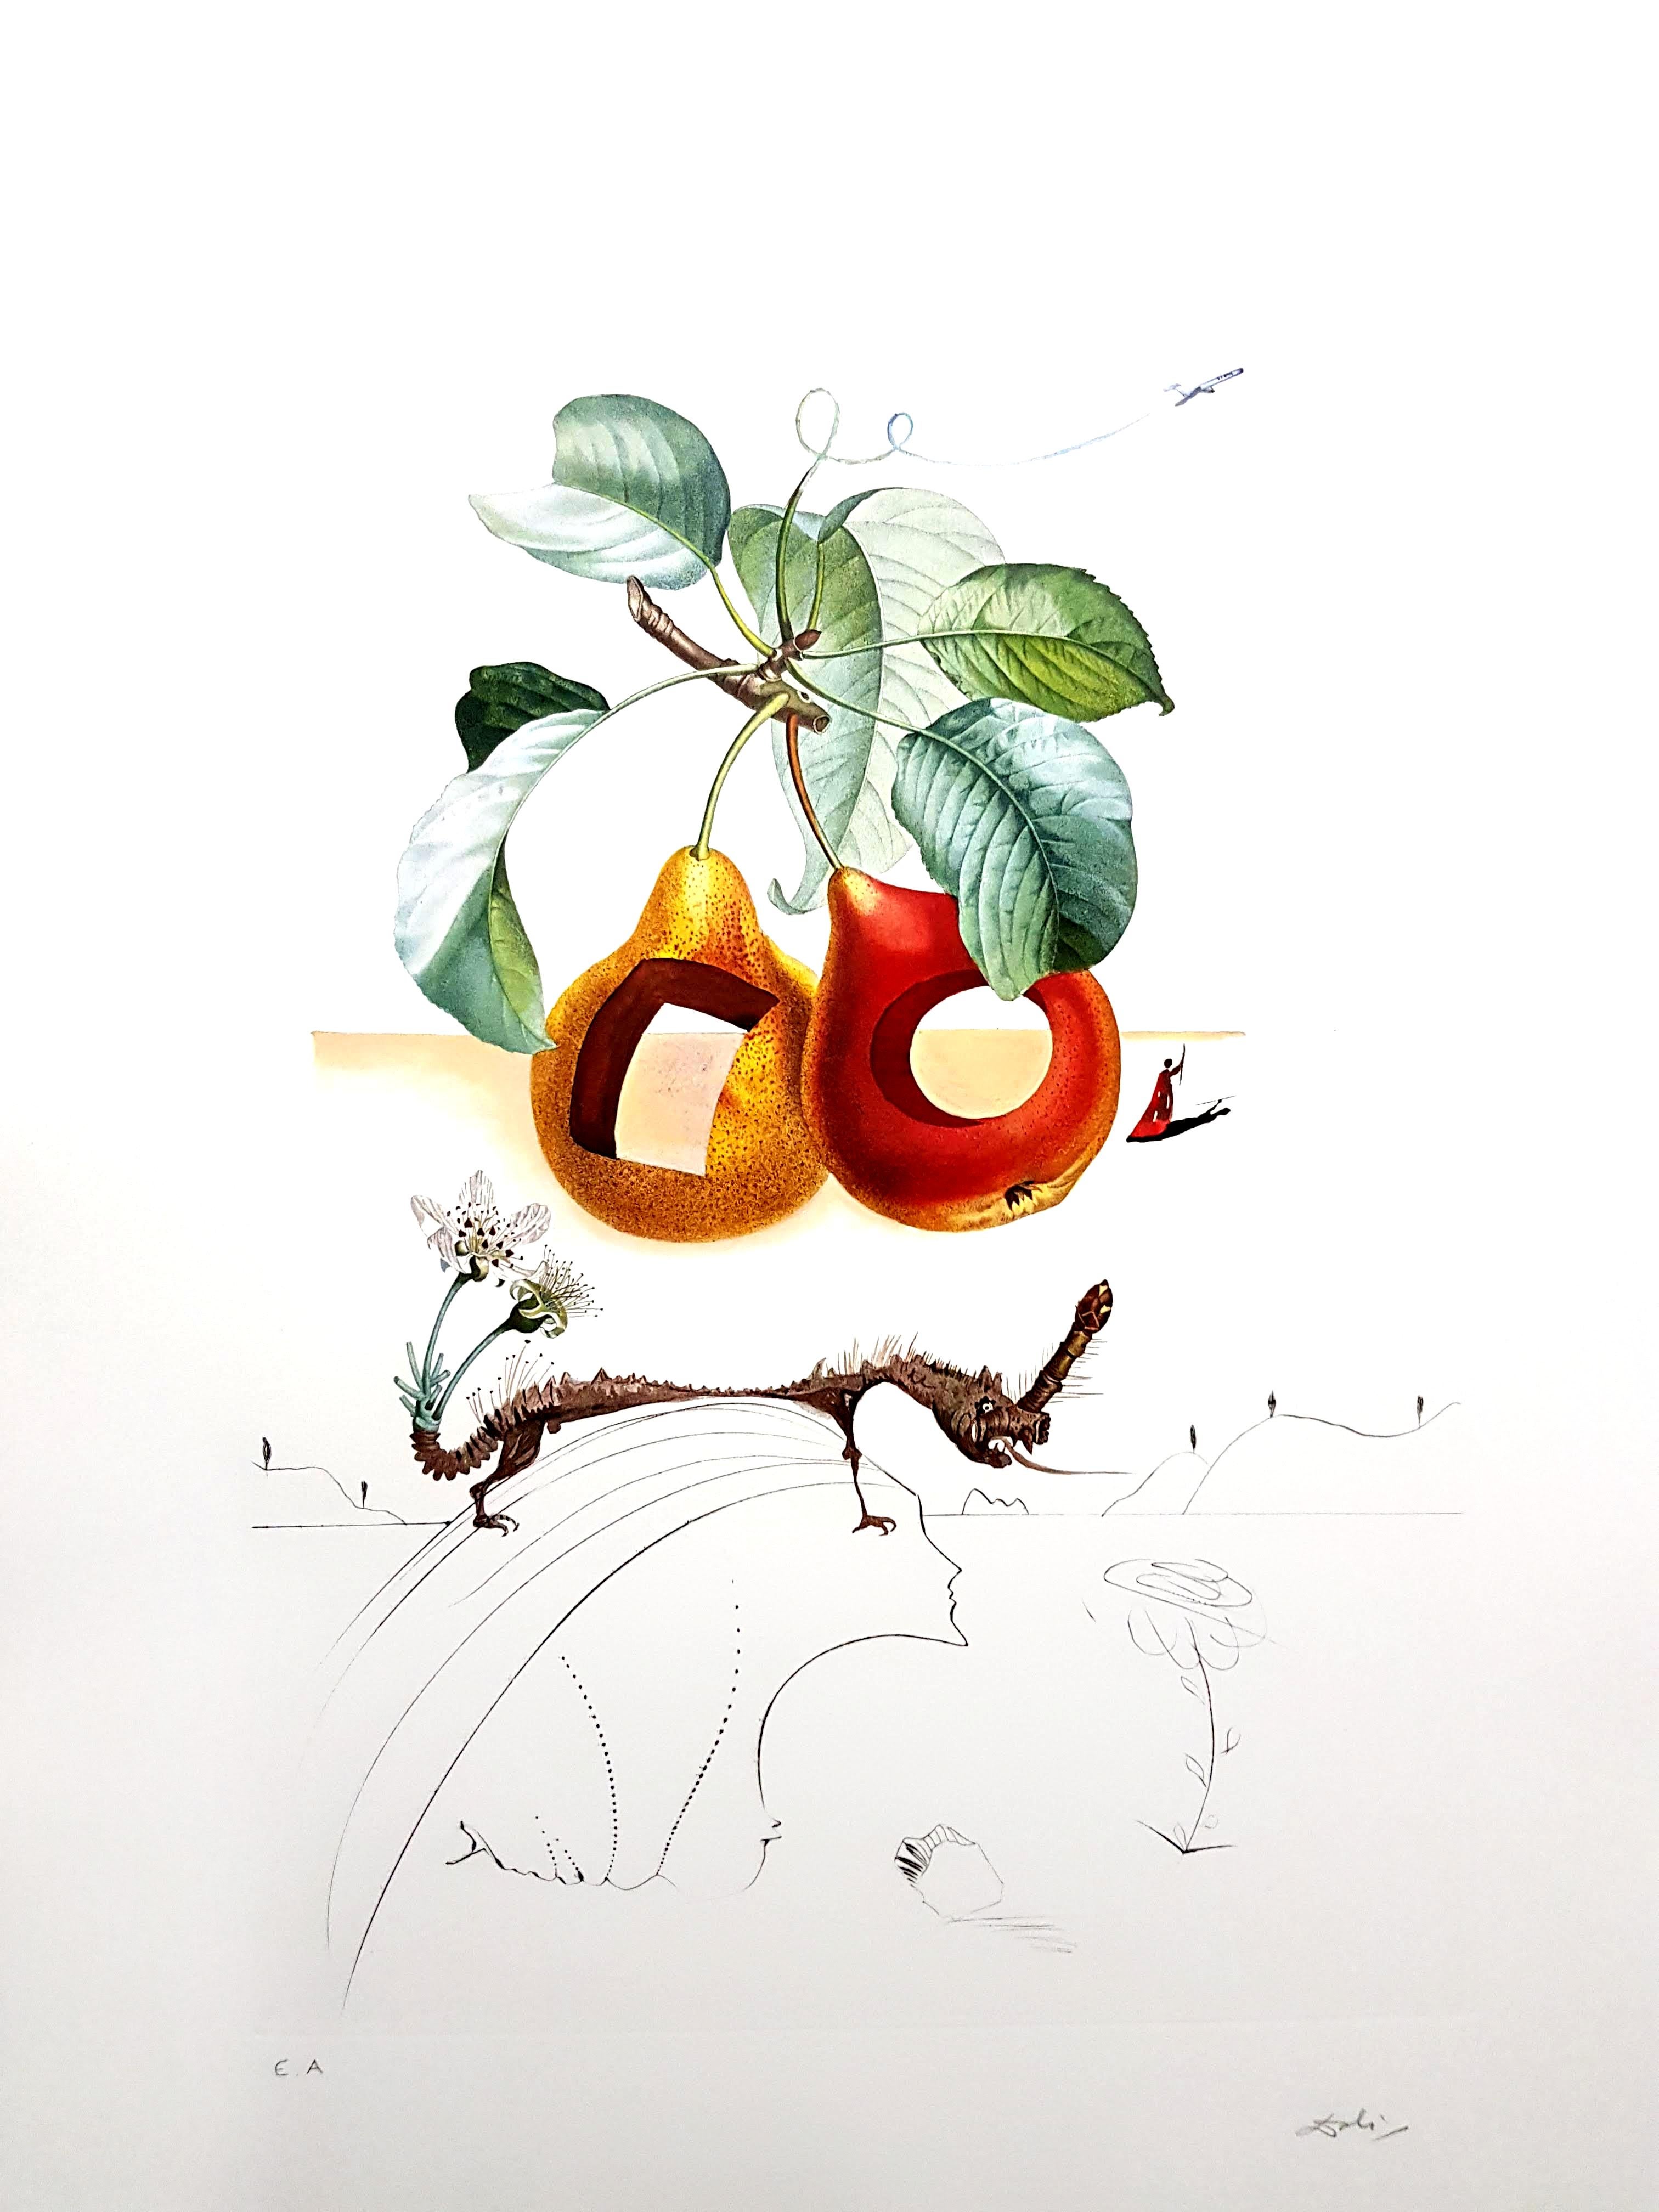 Salvador Dali - Fruits With Holes - Original Hand-Signed Lithograph